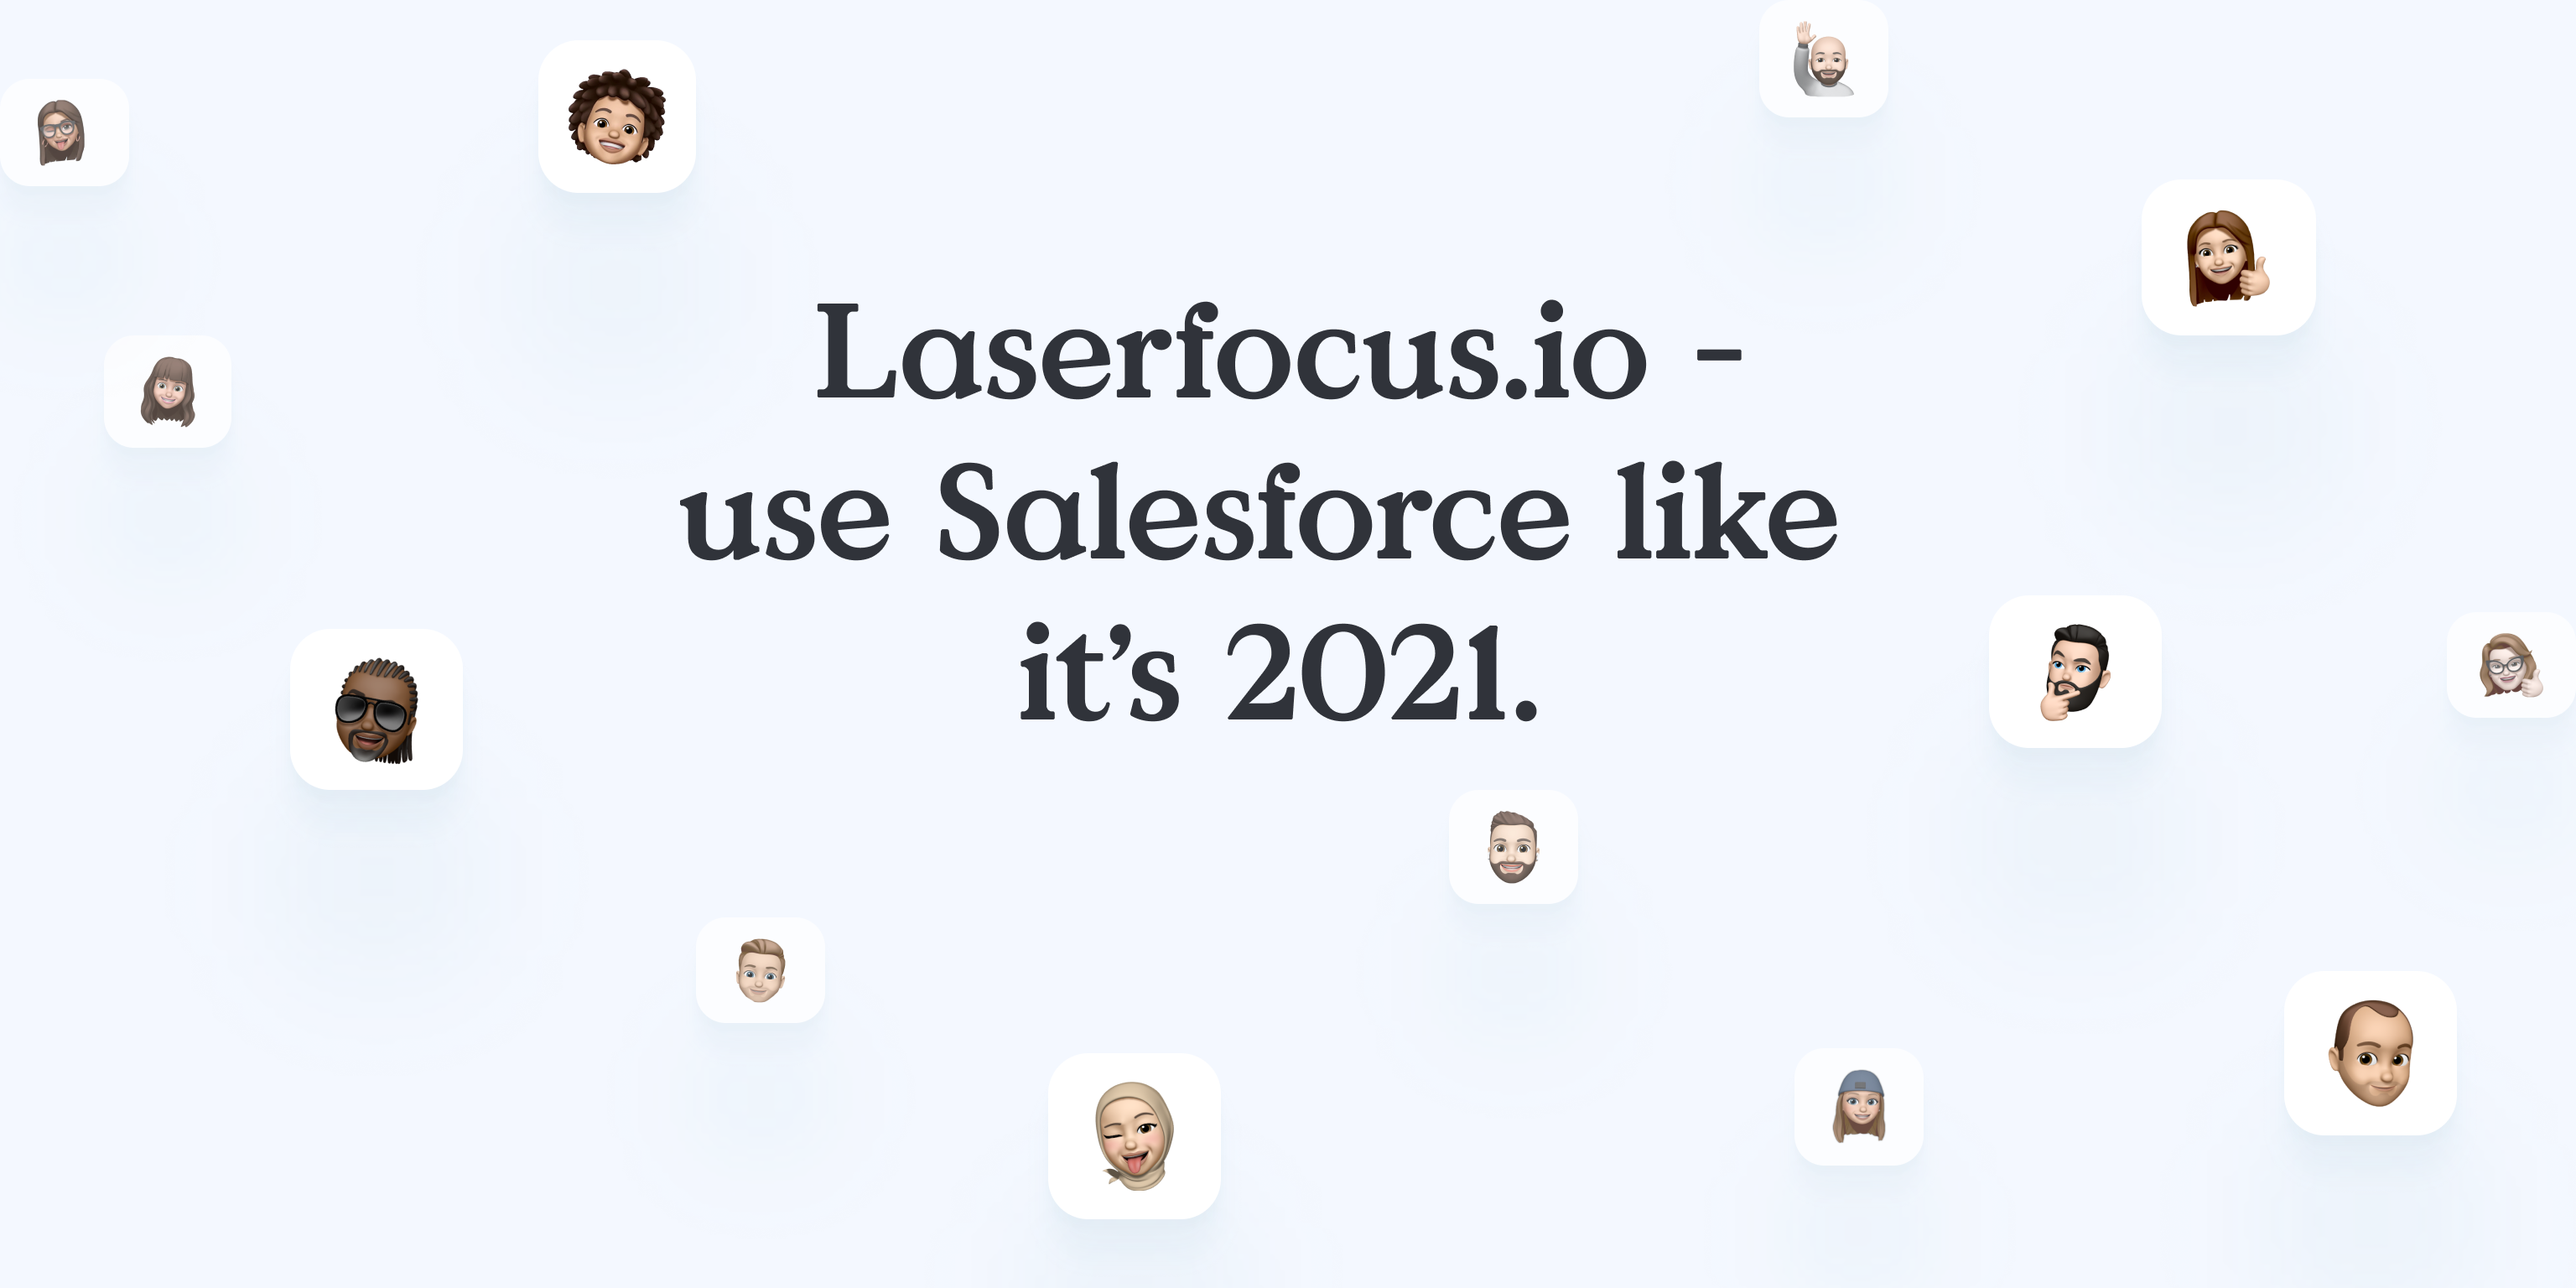 Laserfocus.io use Salesforce like it’s 2021.